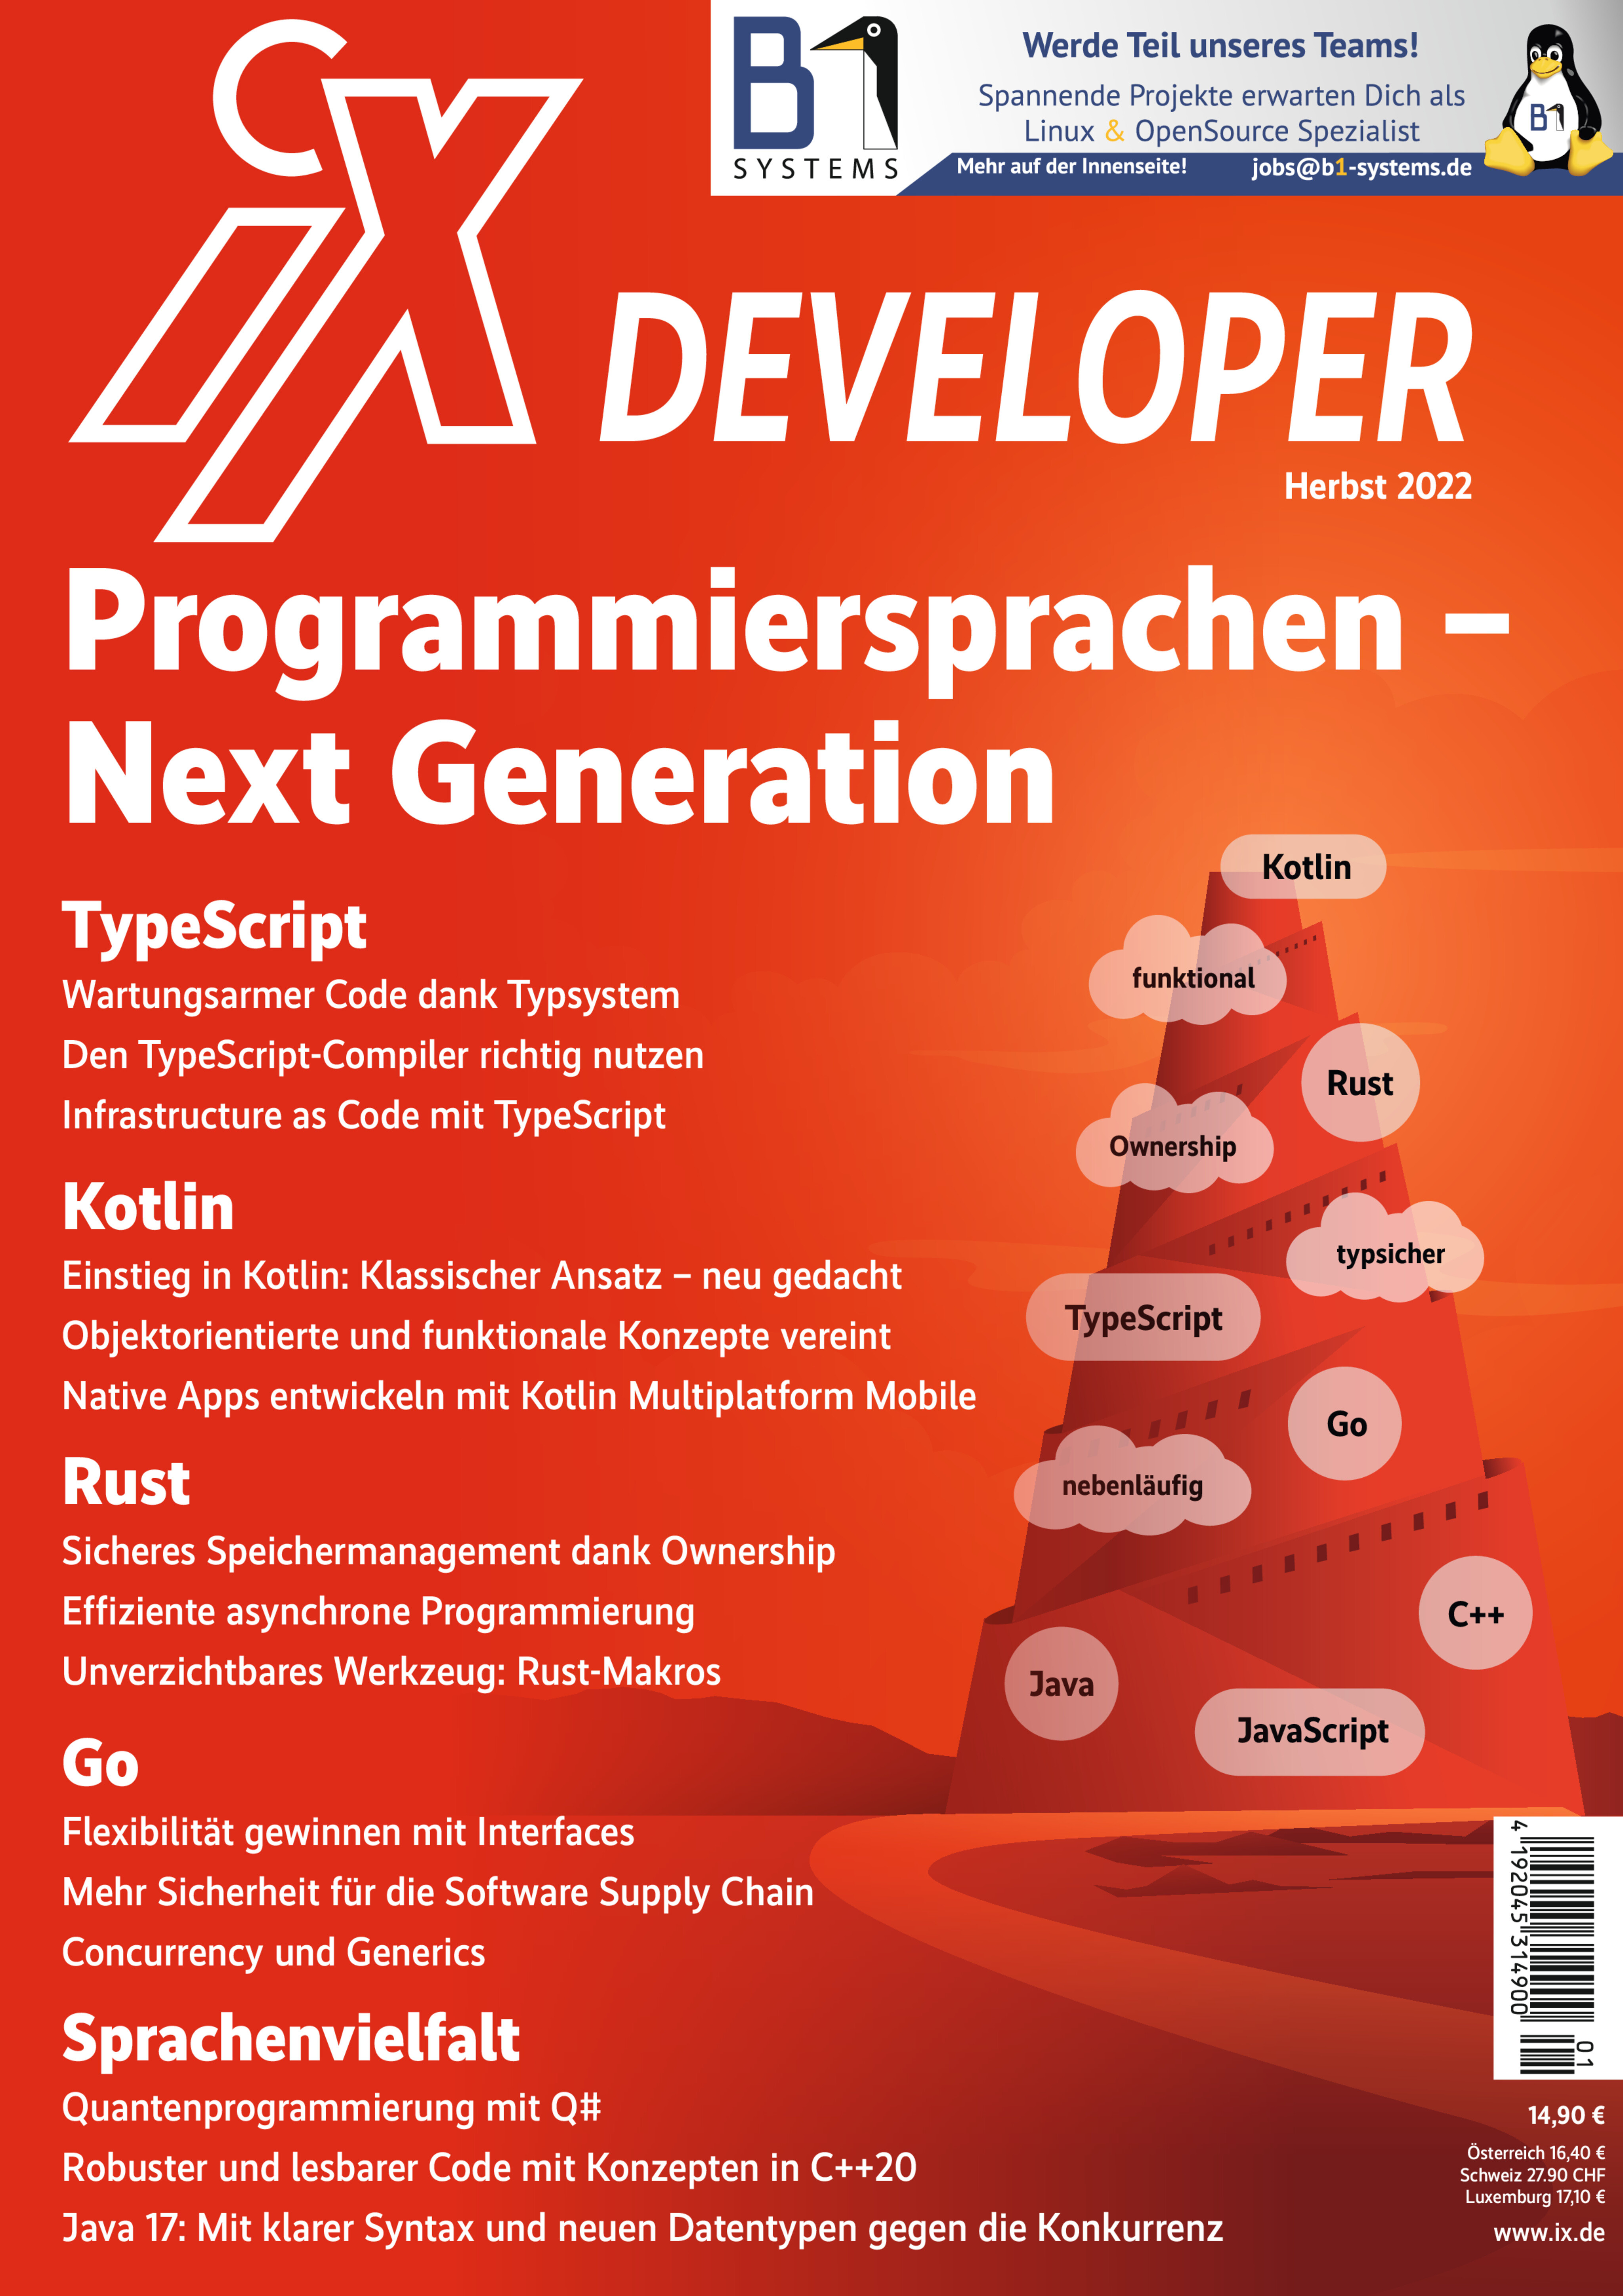 iX Developer 2022 Programmiersprachen – Next Generation